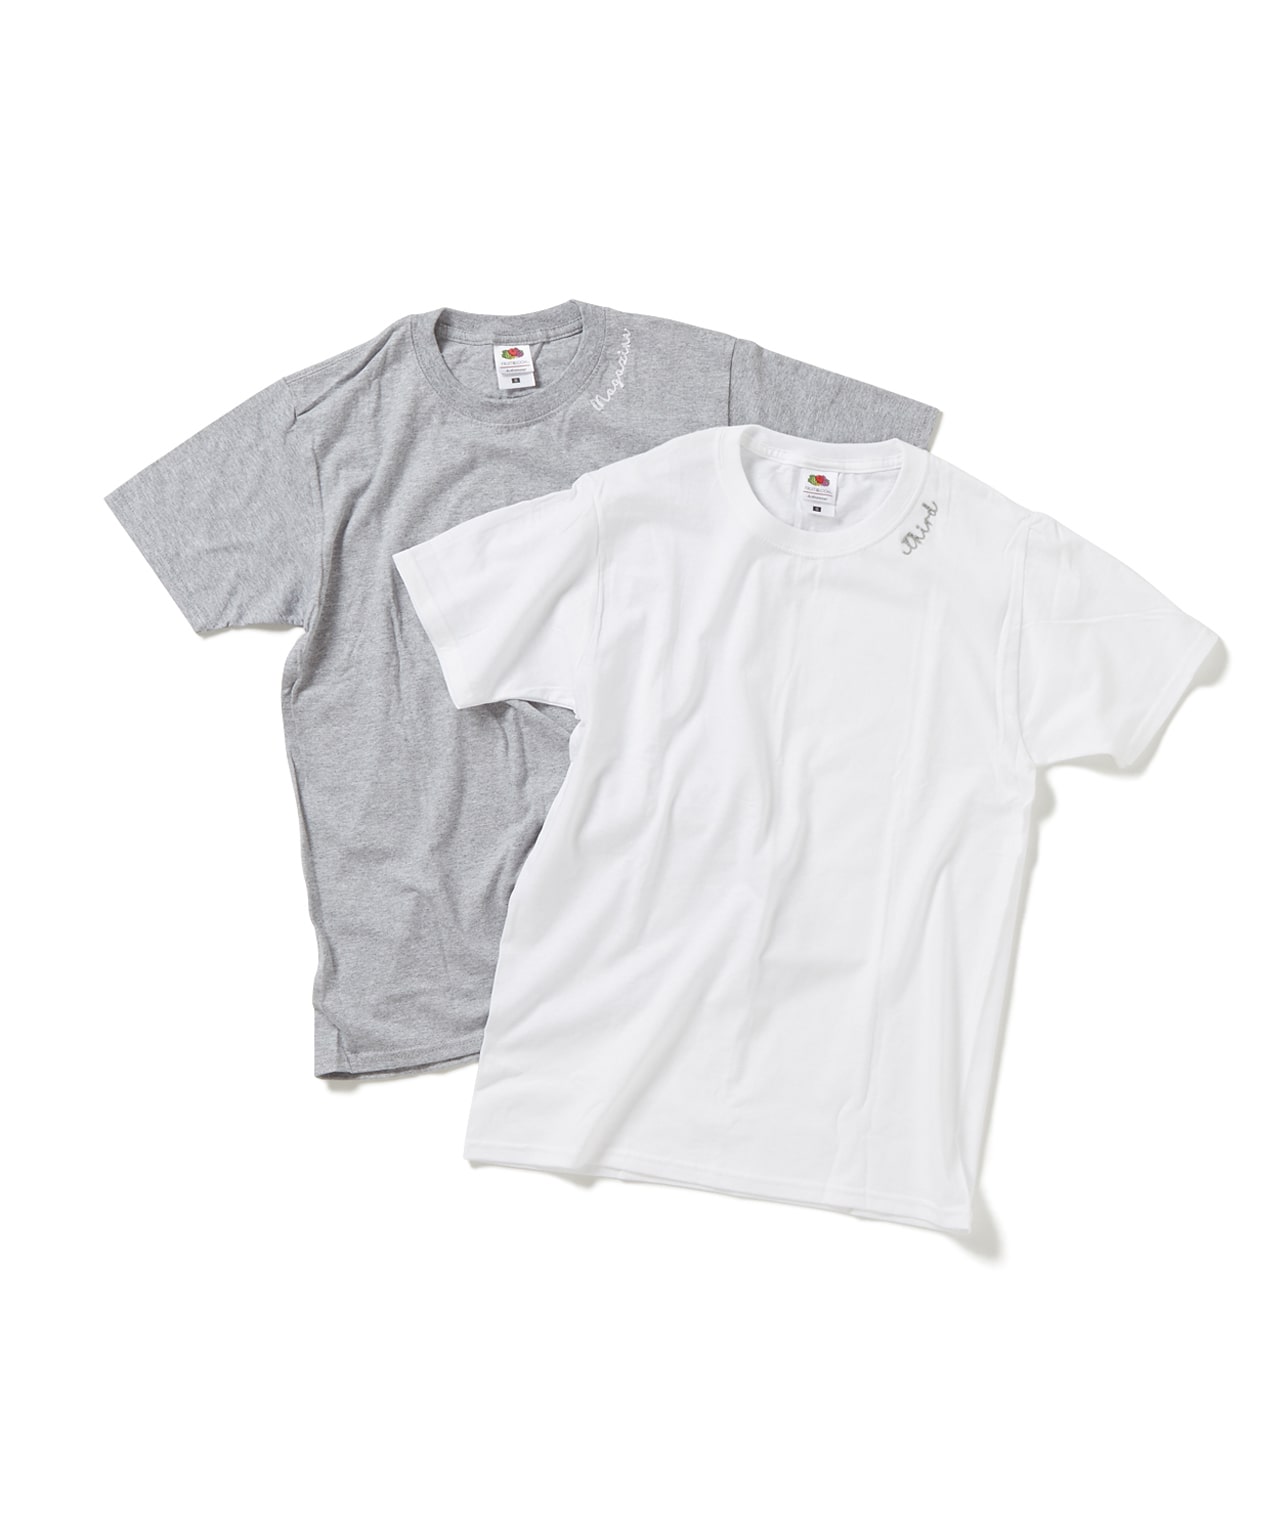 【別注】FRUIT OF THE LOOM/刺繍パックTシャツ 詳細画像 ホワイト/グレー 1